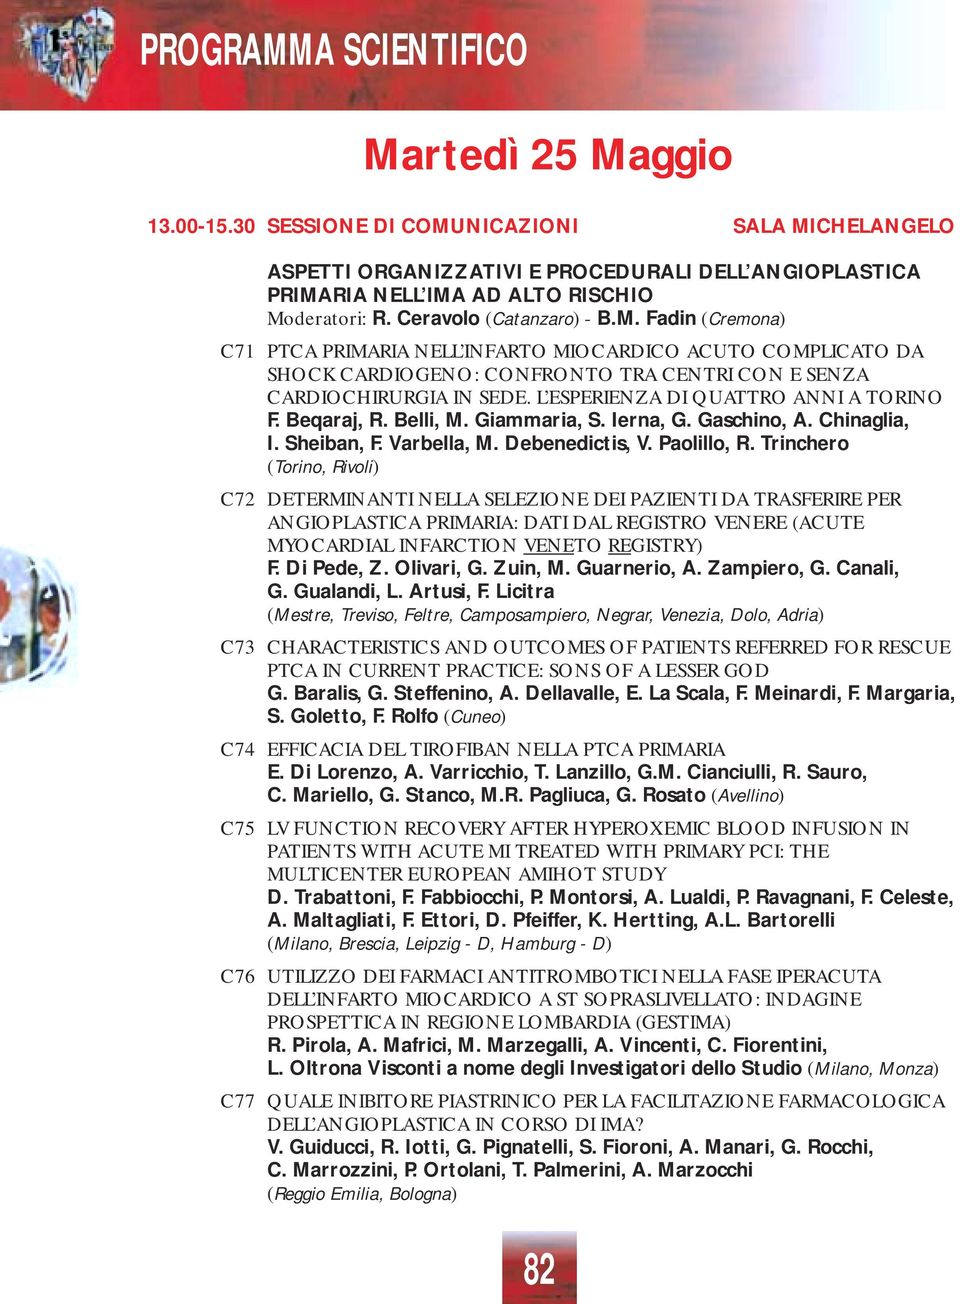 Trinchero (Torino, Rivoli) C72 DETERMINANTI NELLA SELEZIONE DEI PAZIENTI DA TRASFERIRE PER ANGIOPLASTICA PRIMARIA: DATI DAL REGISTRO VENERE (ACUTE MYOCARDIAL INFARCTION VENETO REGISTRY) F. Di Pede, Z.